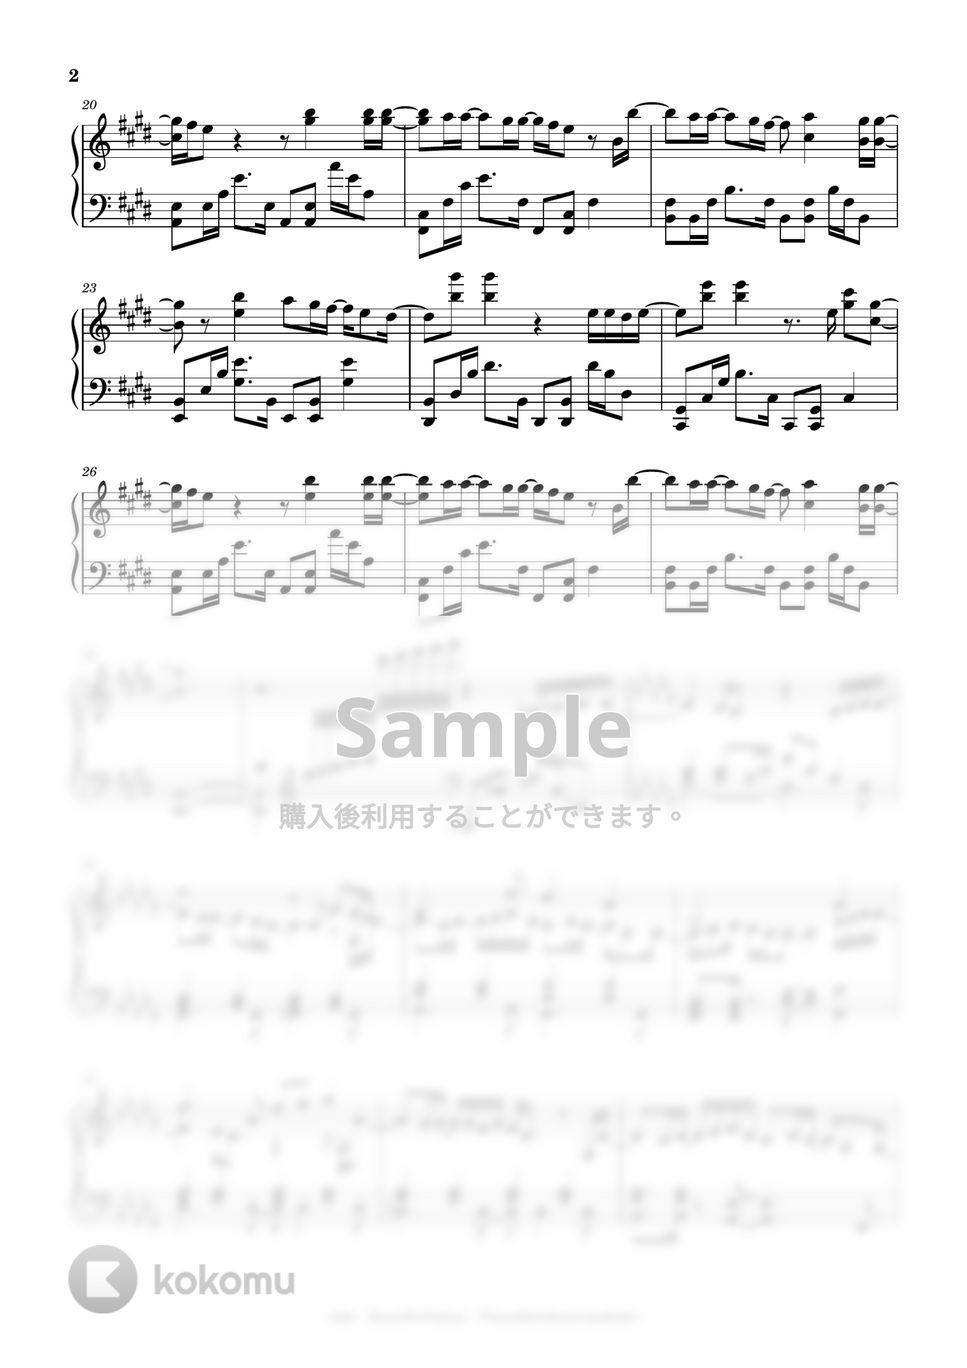 Uta (Ao) - Kaze no Yukue (intermediate, piano) by Mopianc